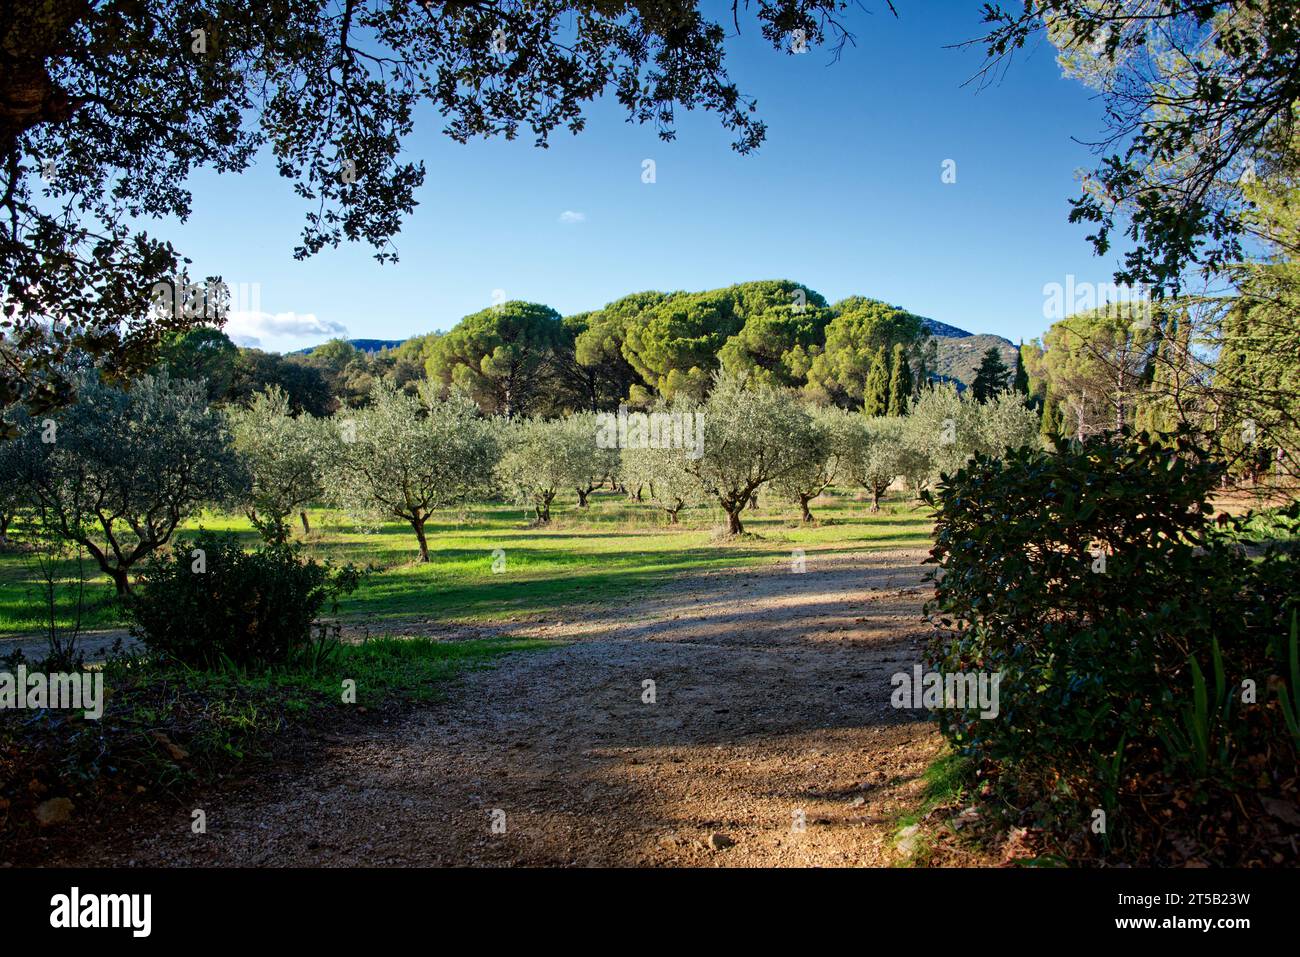 Dorf Lourmarin in der Landschaft von Luberon, Region Vaucluse Provence, Frankreich Stockfoto